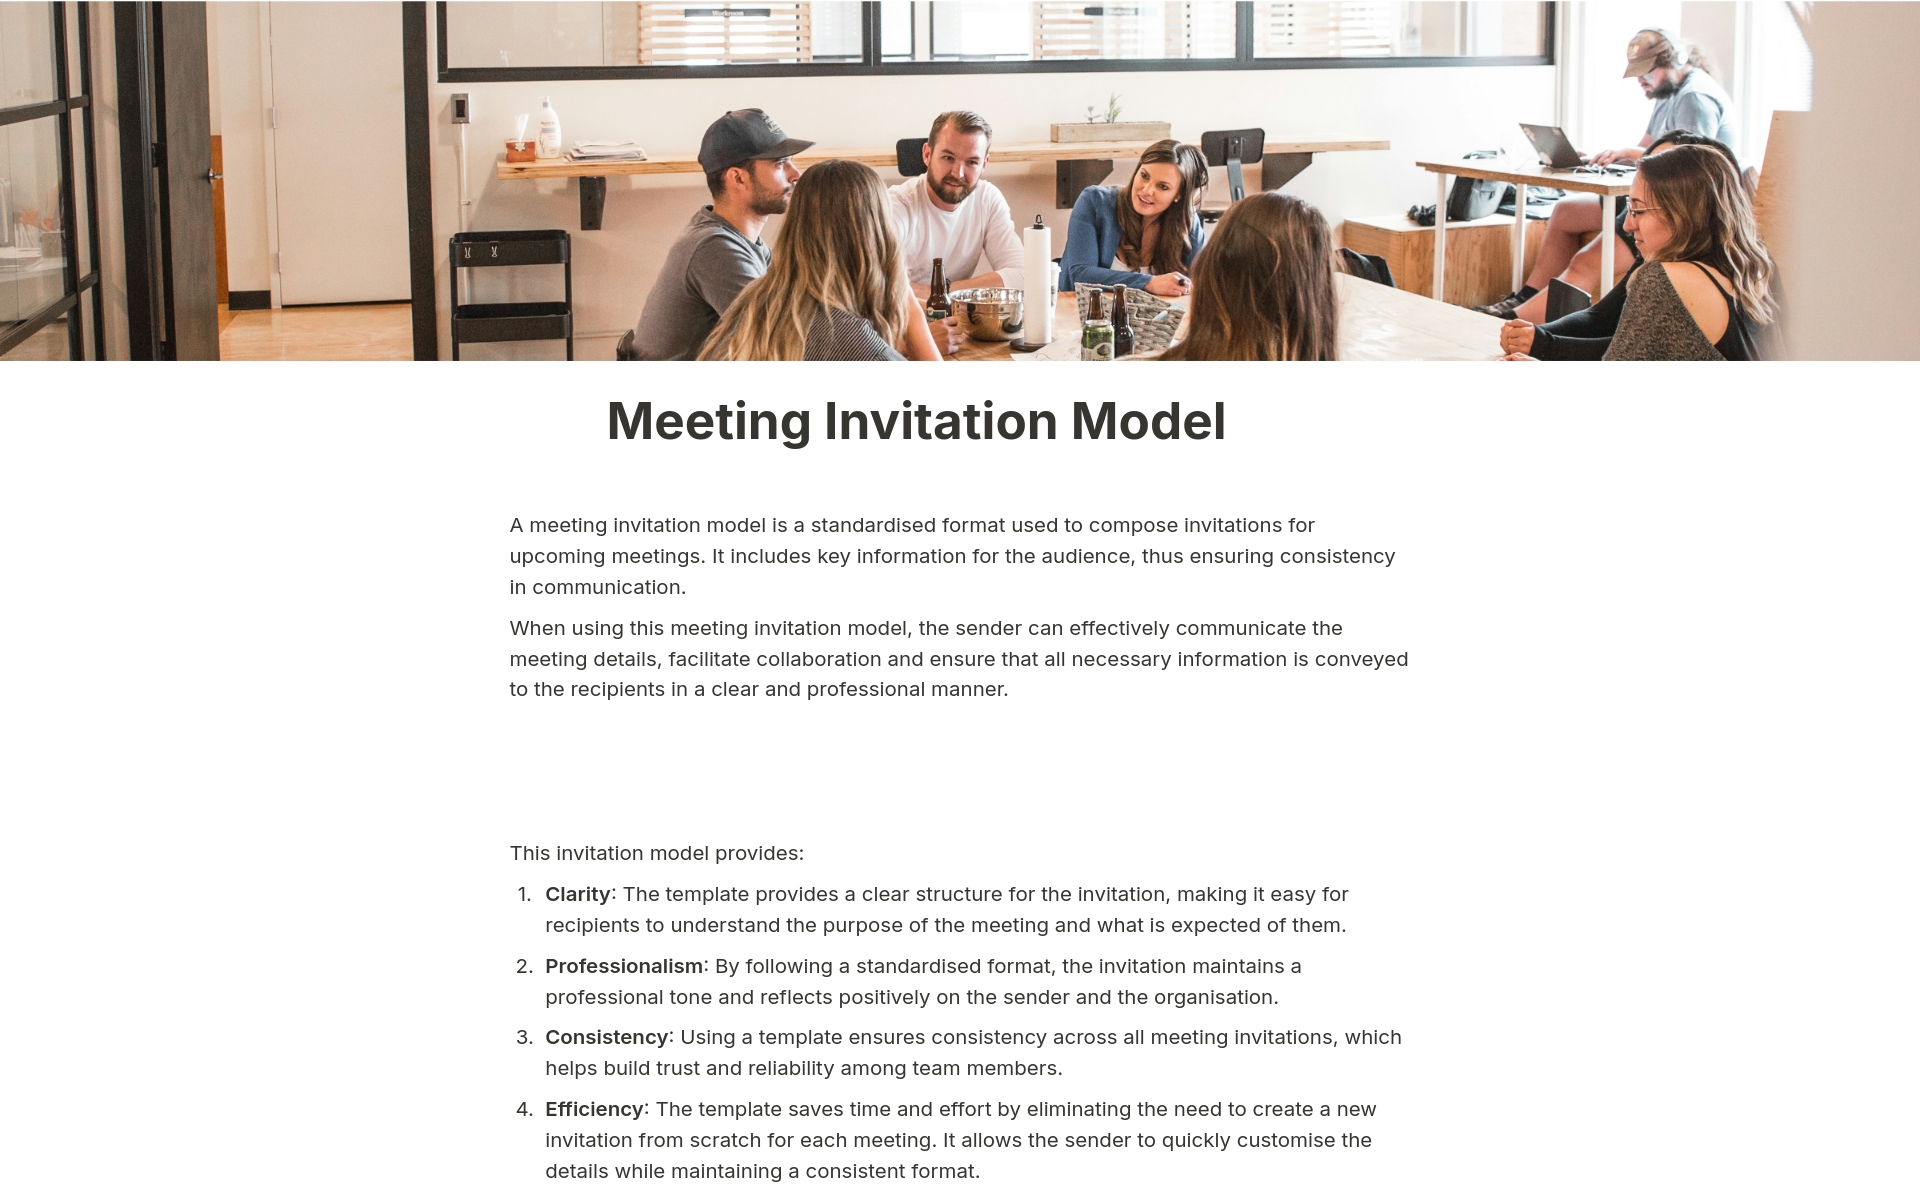 En förhandsgranskning av mallen för Meeting Invitation Model